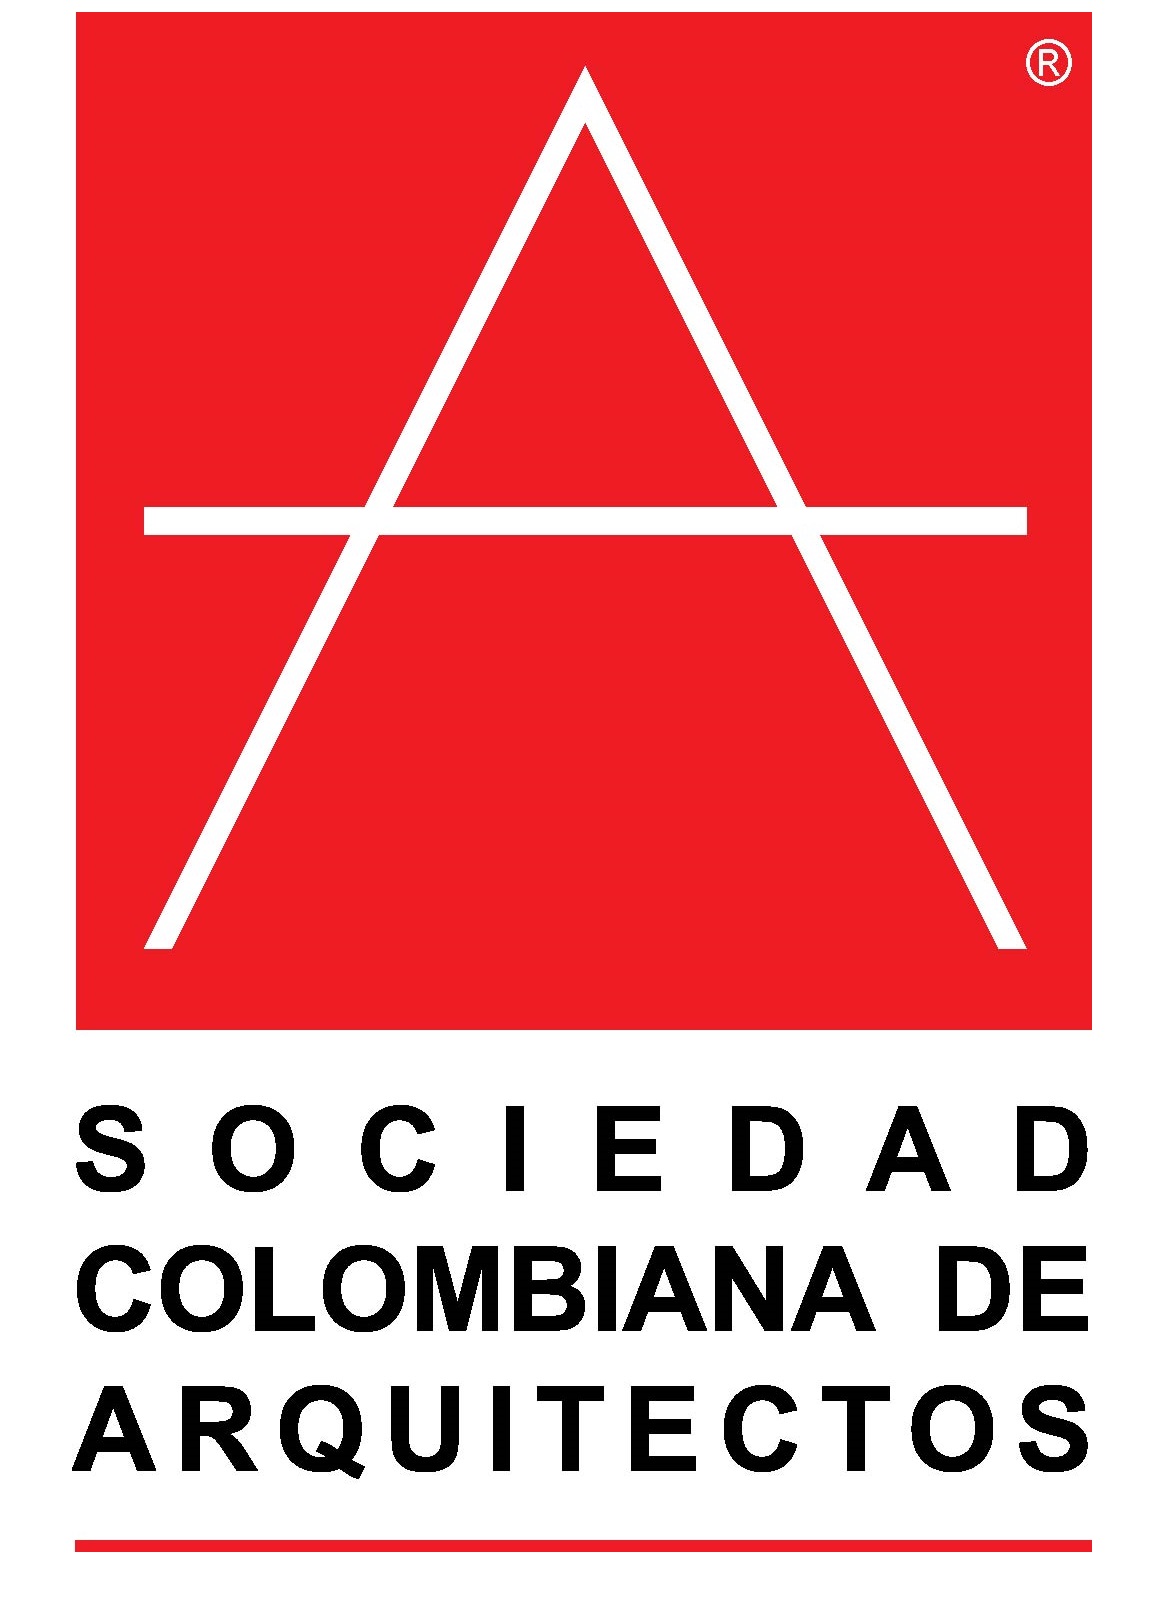 01. Sociedad Colombiana de Arquitectos